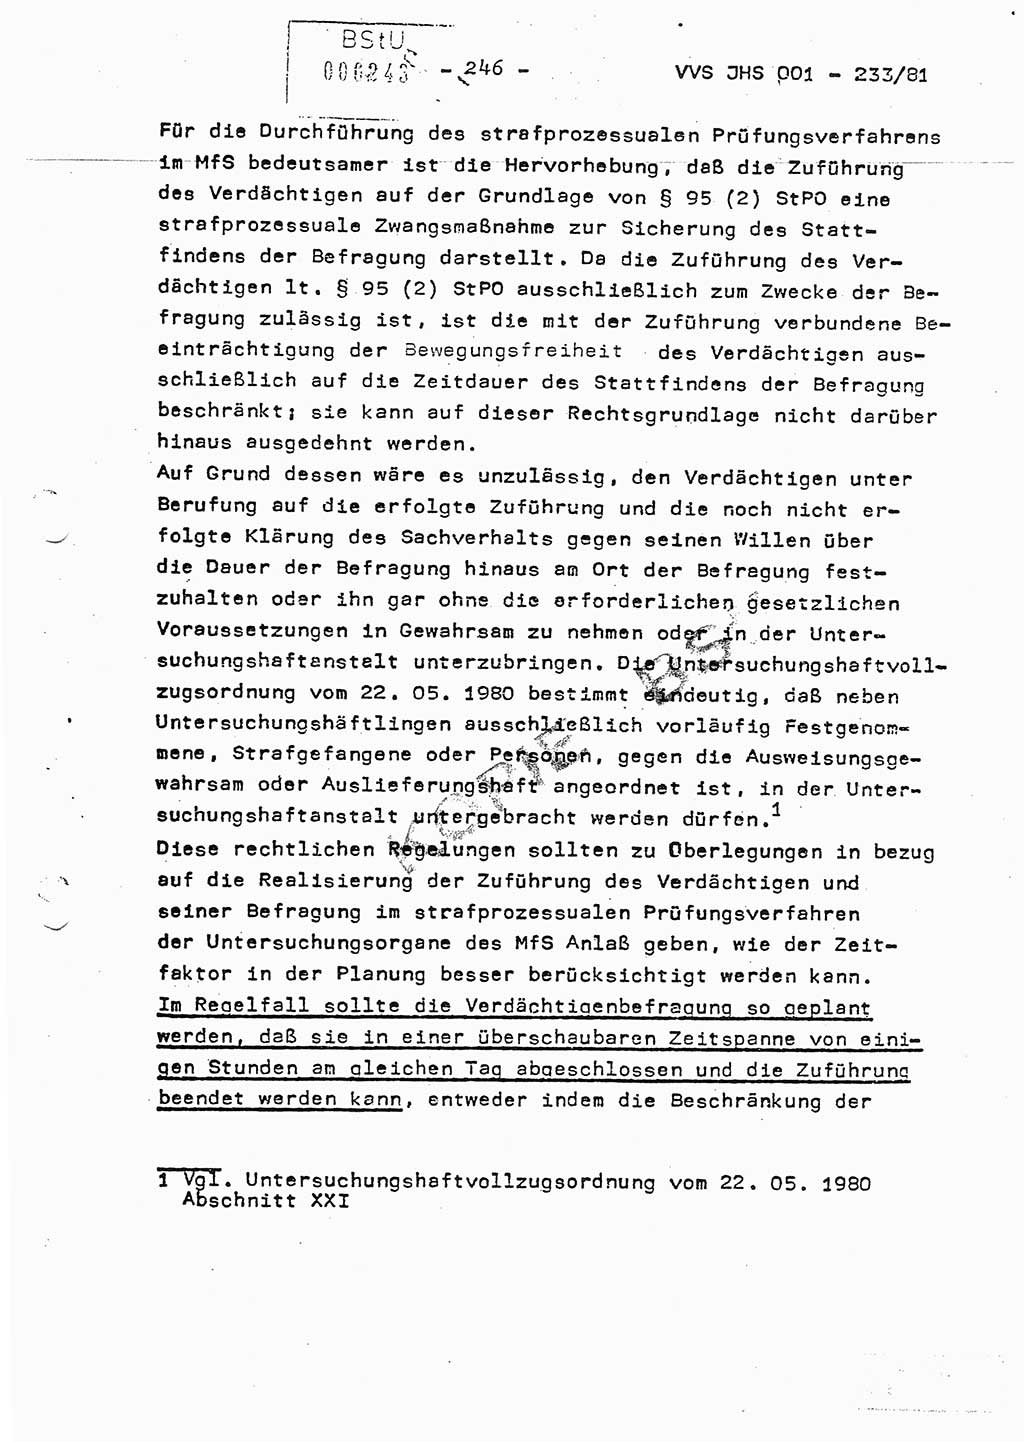 Dissertation Oberstleutnant Horst Zank (JHS), Oberstleutnant Dr. Karl-Heinz Knoblauch (JHS), Oberstleutnant Gustav-Adolf Kowalewski (HA Ⅸ), Oberstleutnant Wolfgang Plötner (HA Ⅸ), Ministerium für Staatssicherheit (MfS) [Deutsche Demokratische Republik (DDR)], Juristische Hochschule (JHS), Vertrauliche Verschlußsache (VVS) o001-233/81, Potsdam 1981, Blatt 246 (Diss. MfS DDR JHS VVS o001-233/81 1981, Bl. 246)